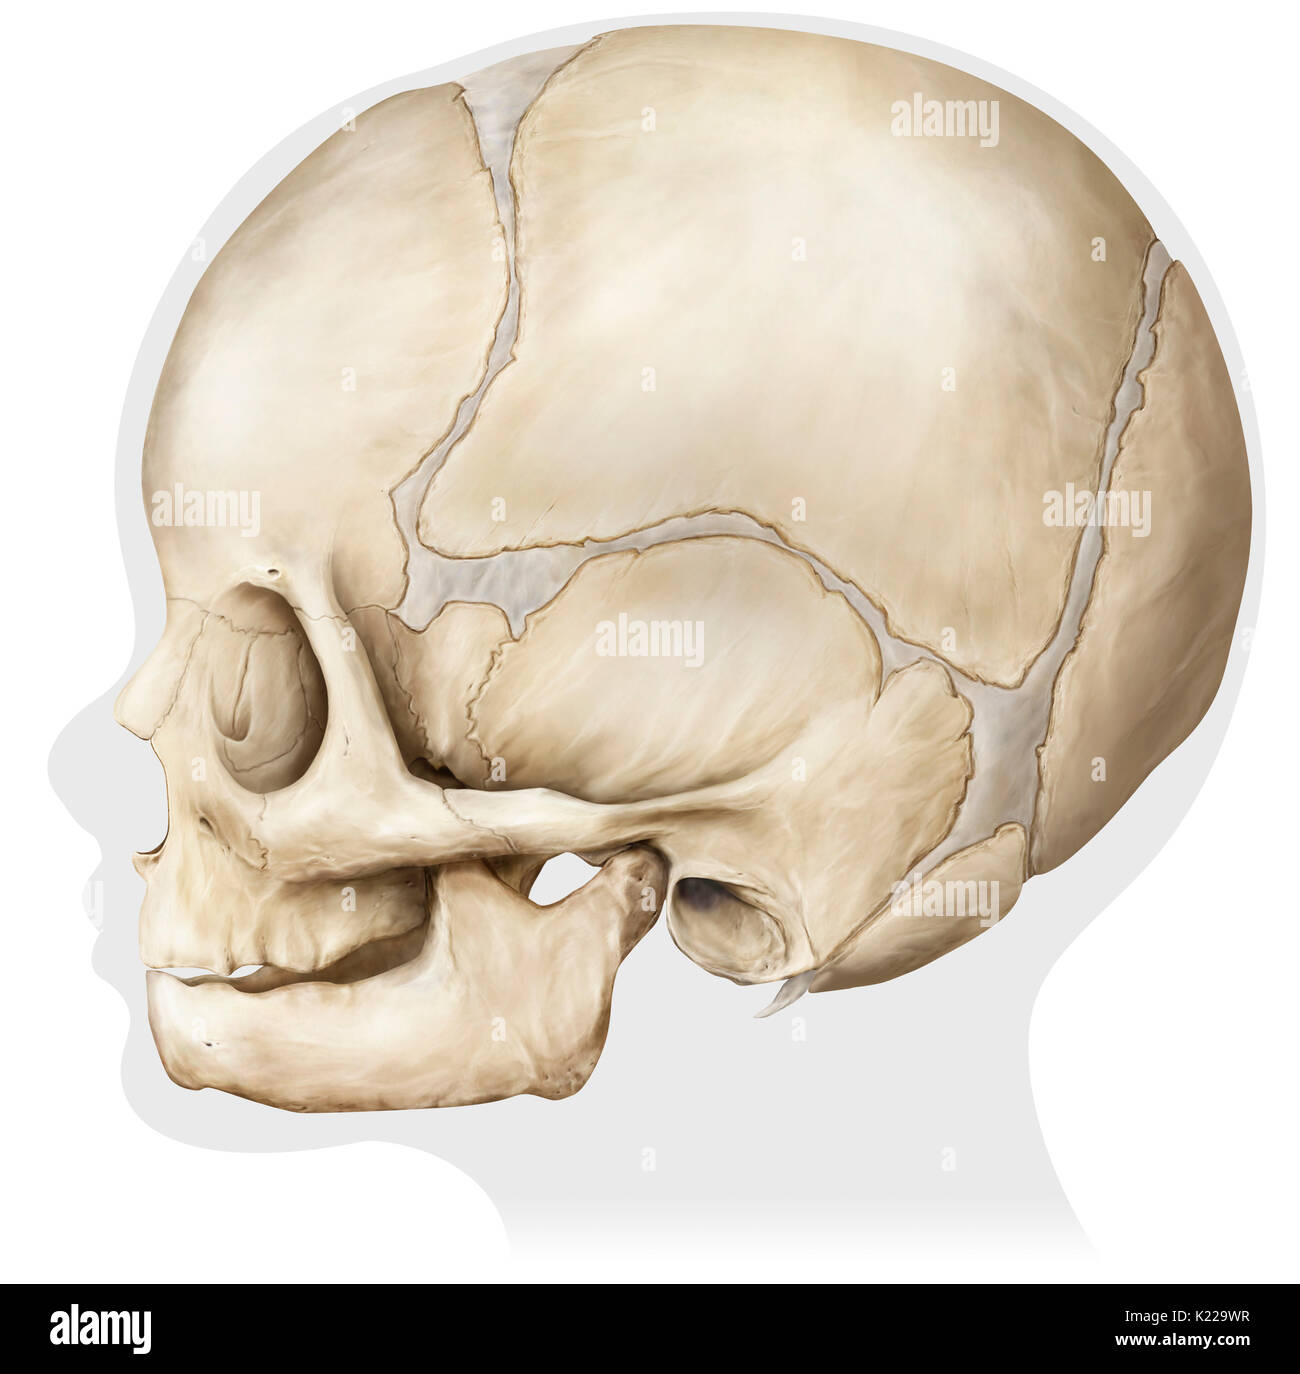 Estructura ósea formada por ocho huesos (cuatro incluso los huesos y cuatro huesos impares) que cubre y protege el cerebro. Este es todavía un niño. Foto de stock